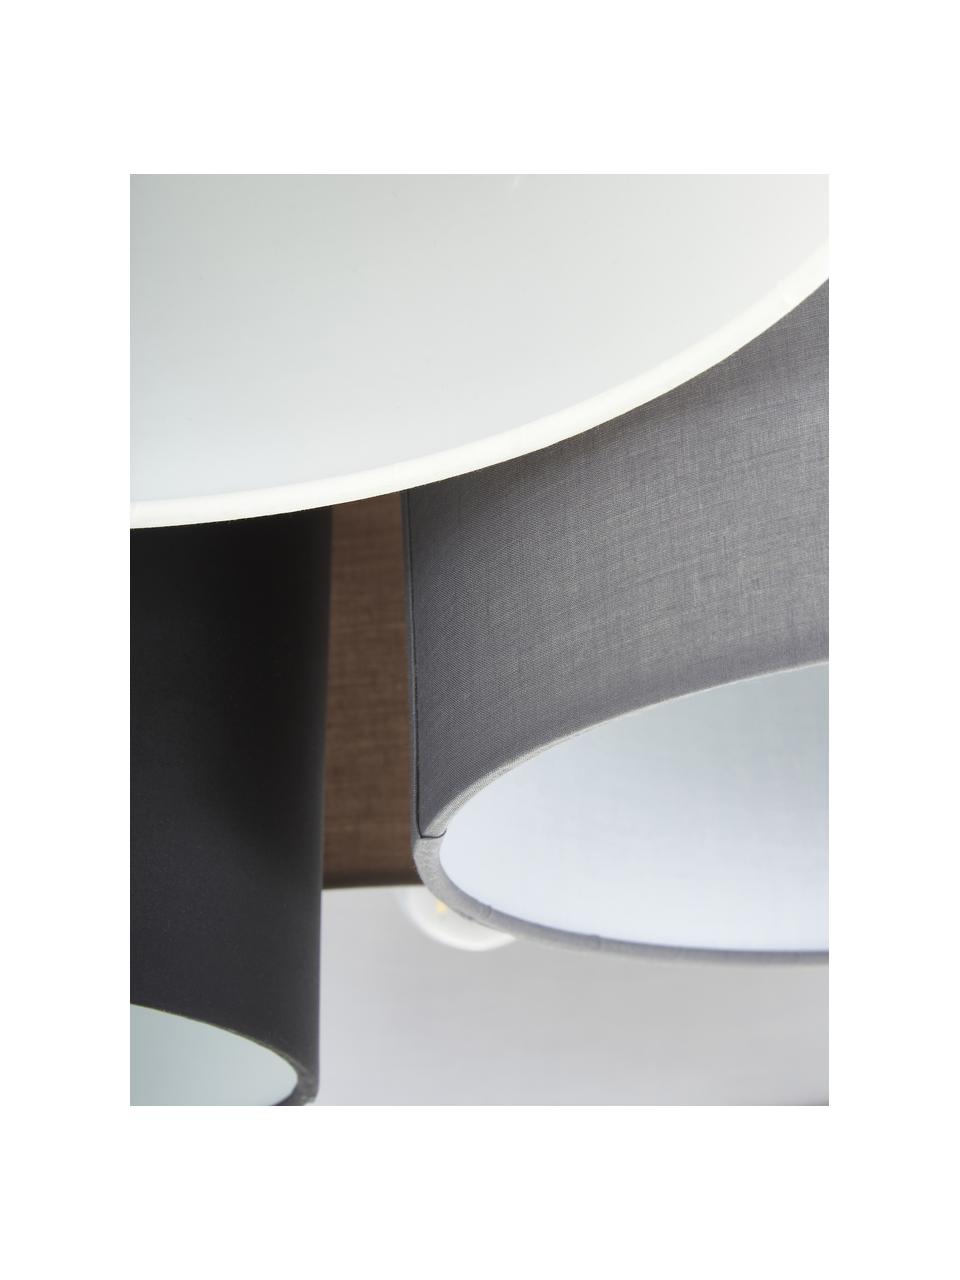 Grote plafondlamp Pastore Grande, Bruin, grijs, wit, zwart, Ø 90 x H 29 cm